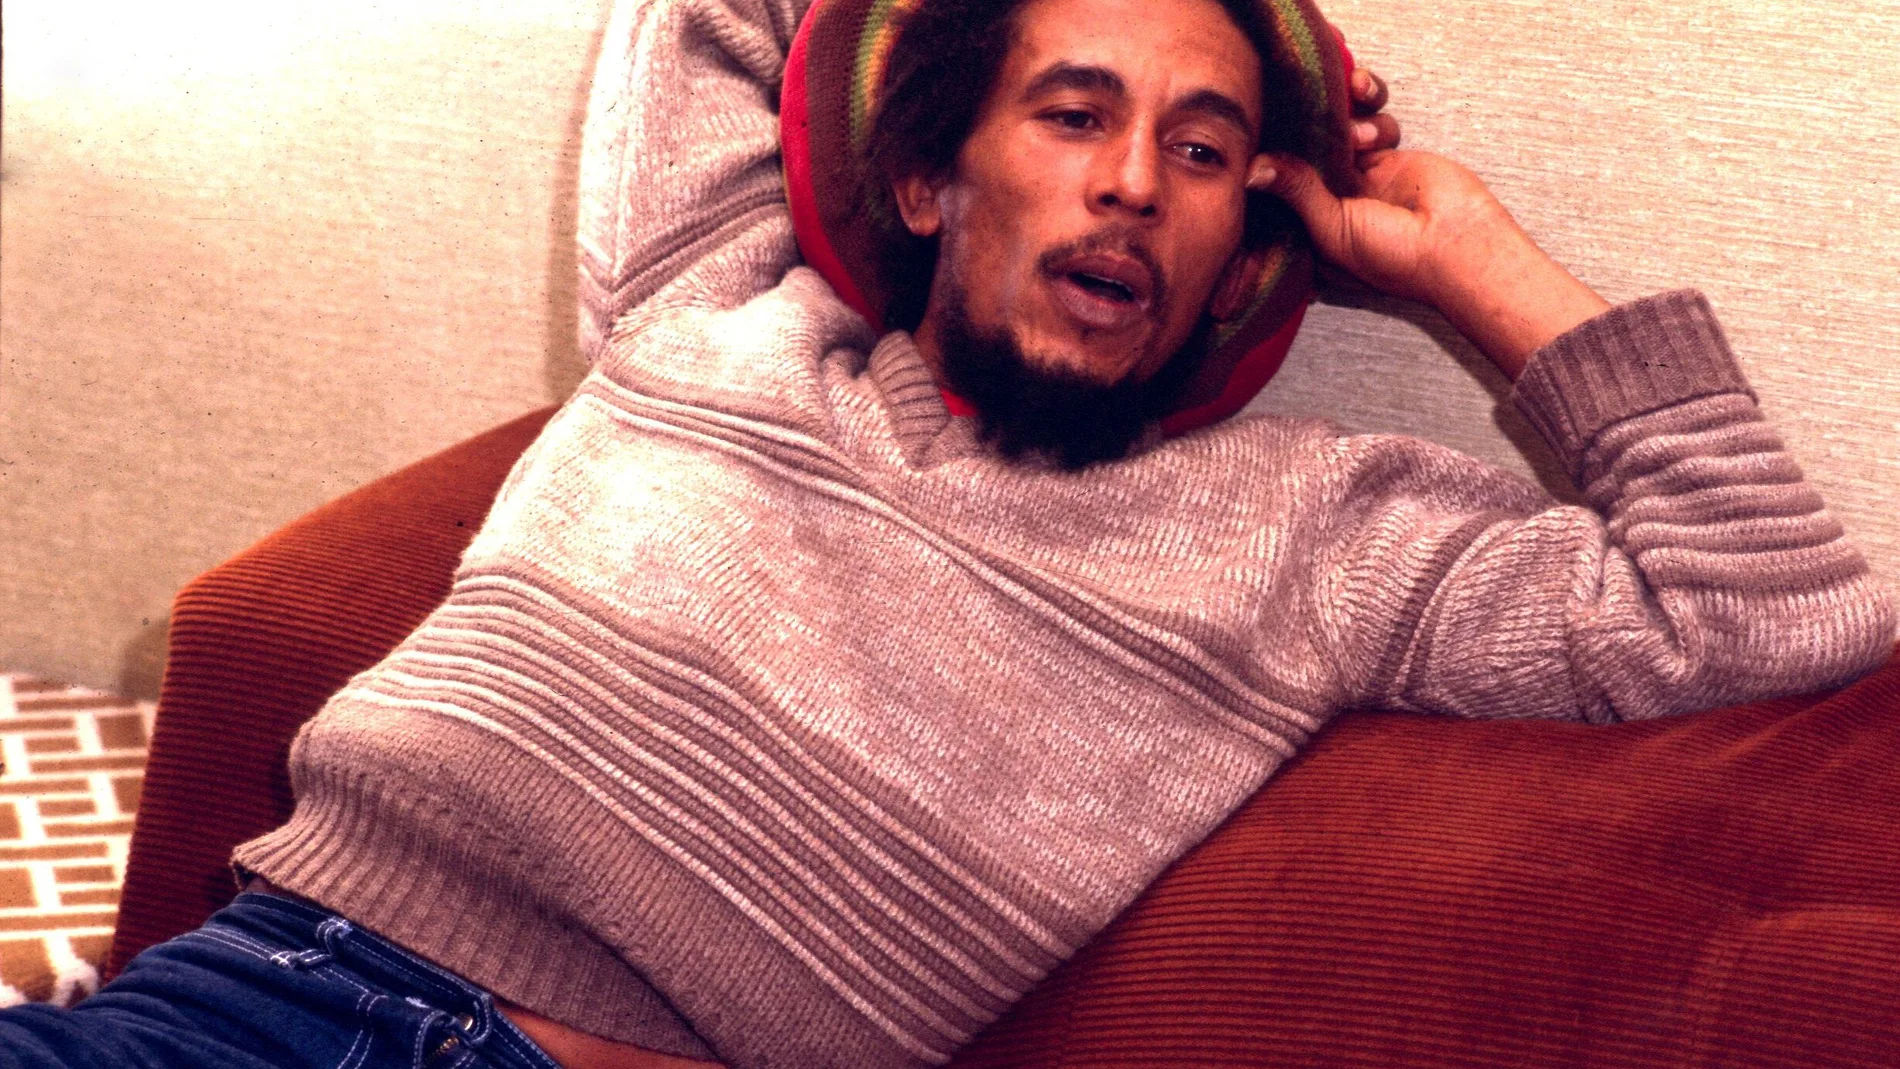 Bob Marley en su entrevista con "Popular 1". Barcelona. (30-6-80)